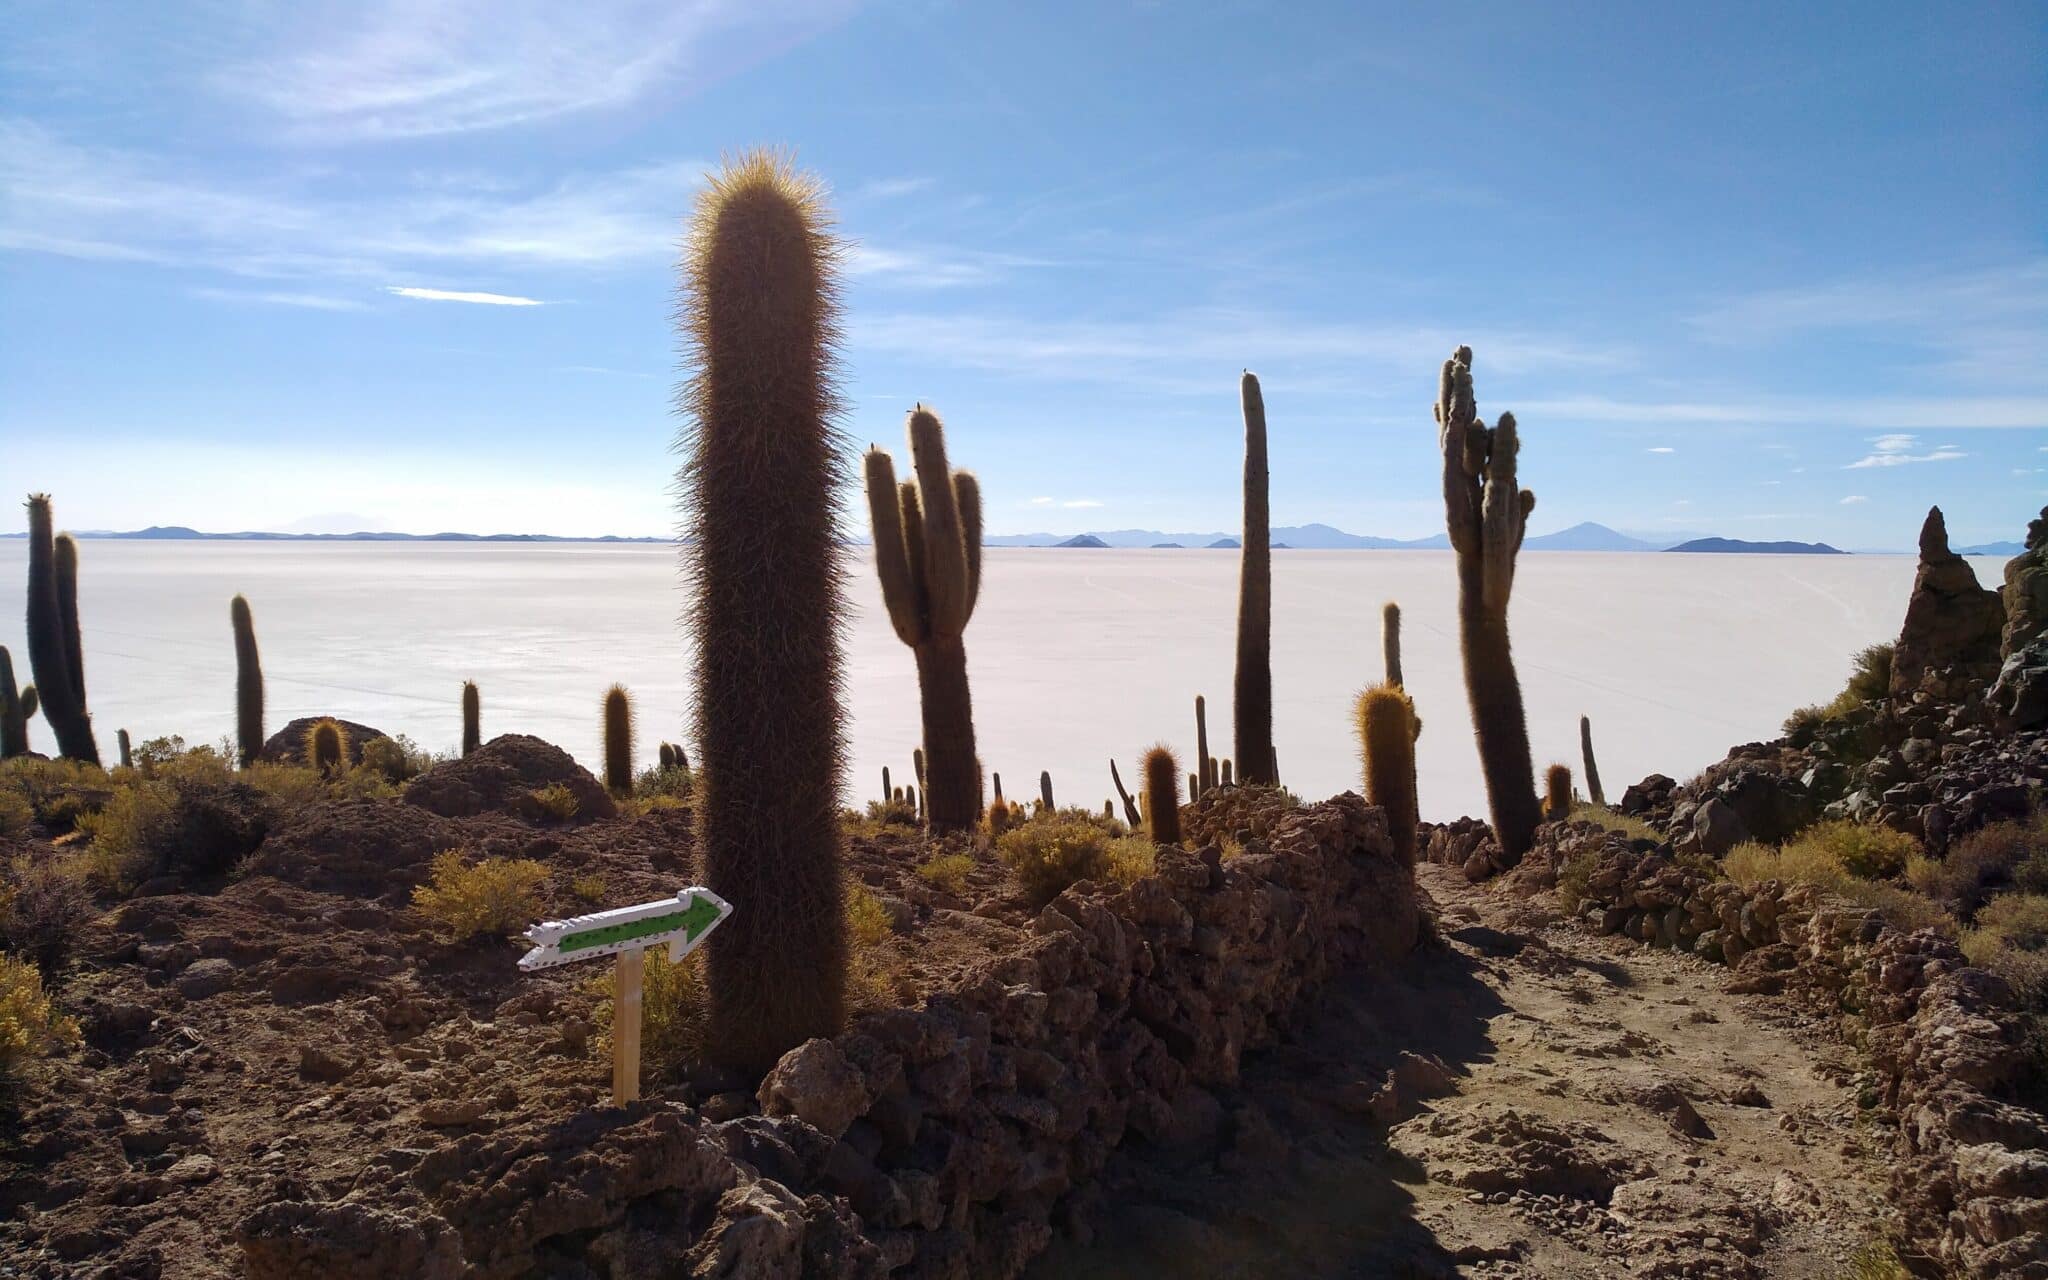 Kakteen, durch die ein Weg hindurchführt, im Hintergrund die Weite der Salzwüste und Berge am Horizont.